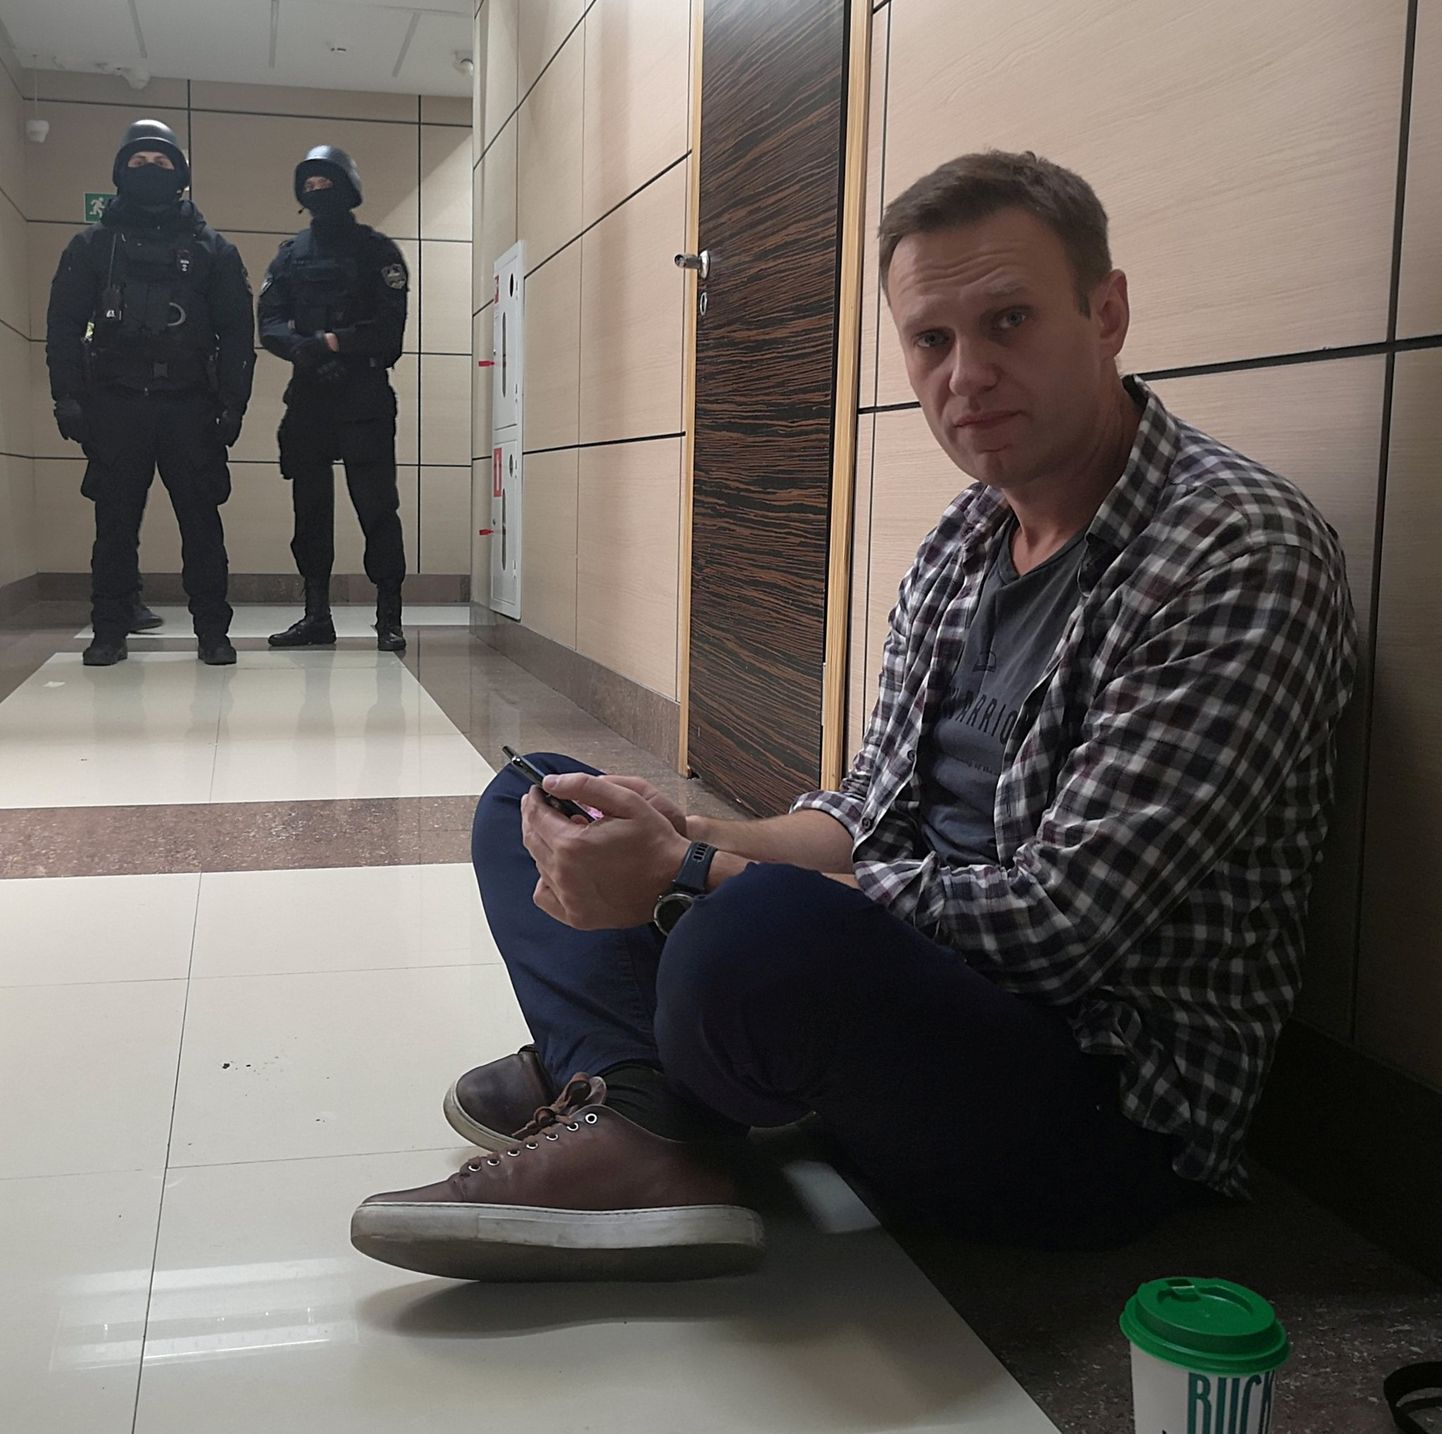 Vene opositsioonipoliitik Aleksei Navalnõi korruptsioonivastase büroo läbiotsimise ajal 26. detsember 2019. 
Aleksandr Golovatši jagatud foto.